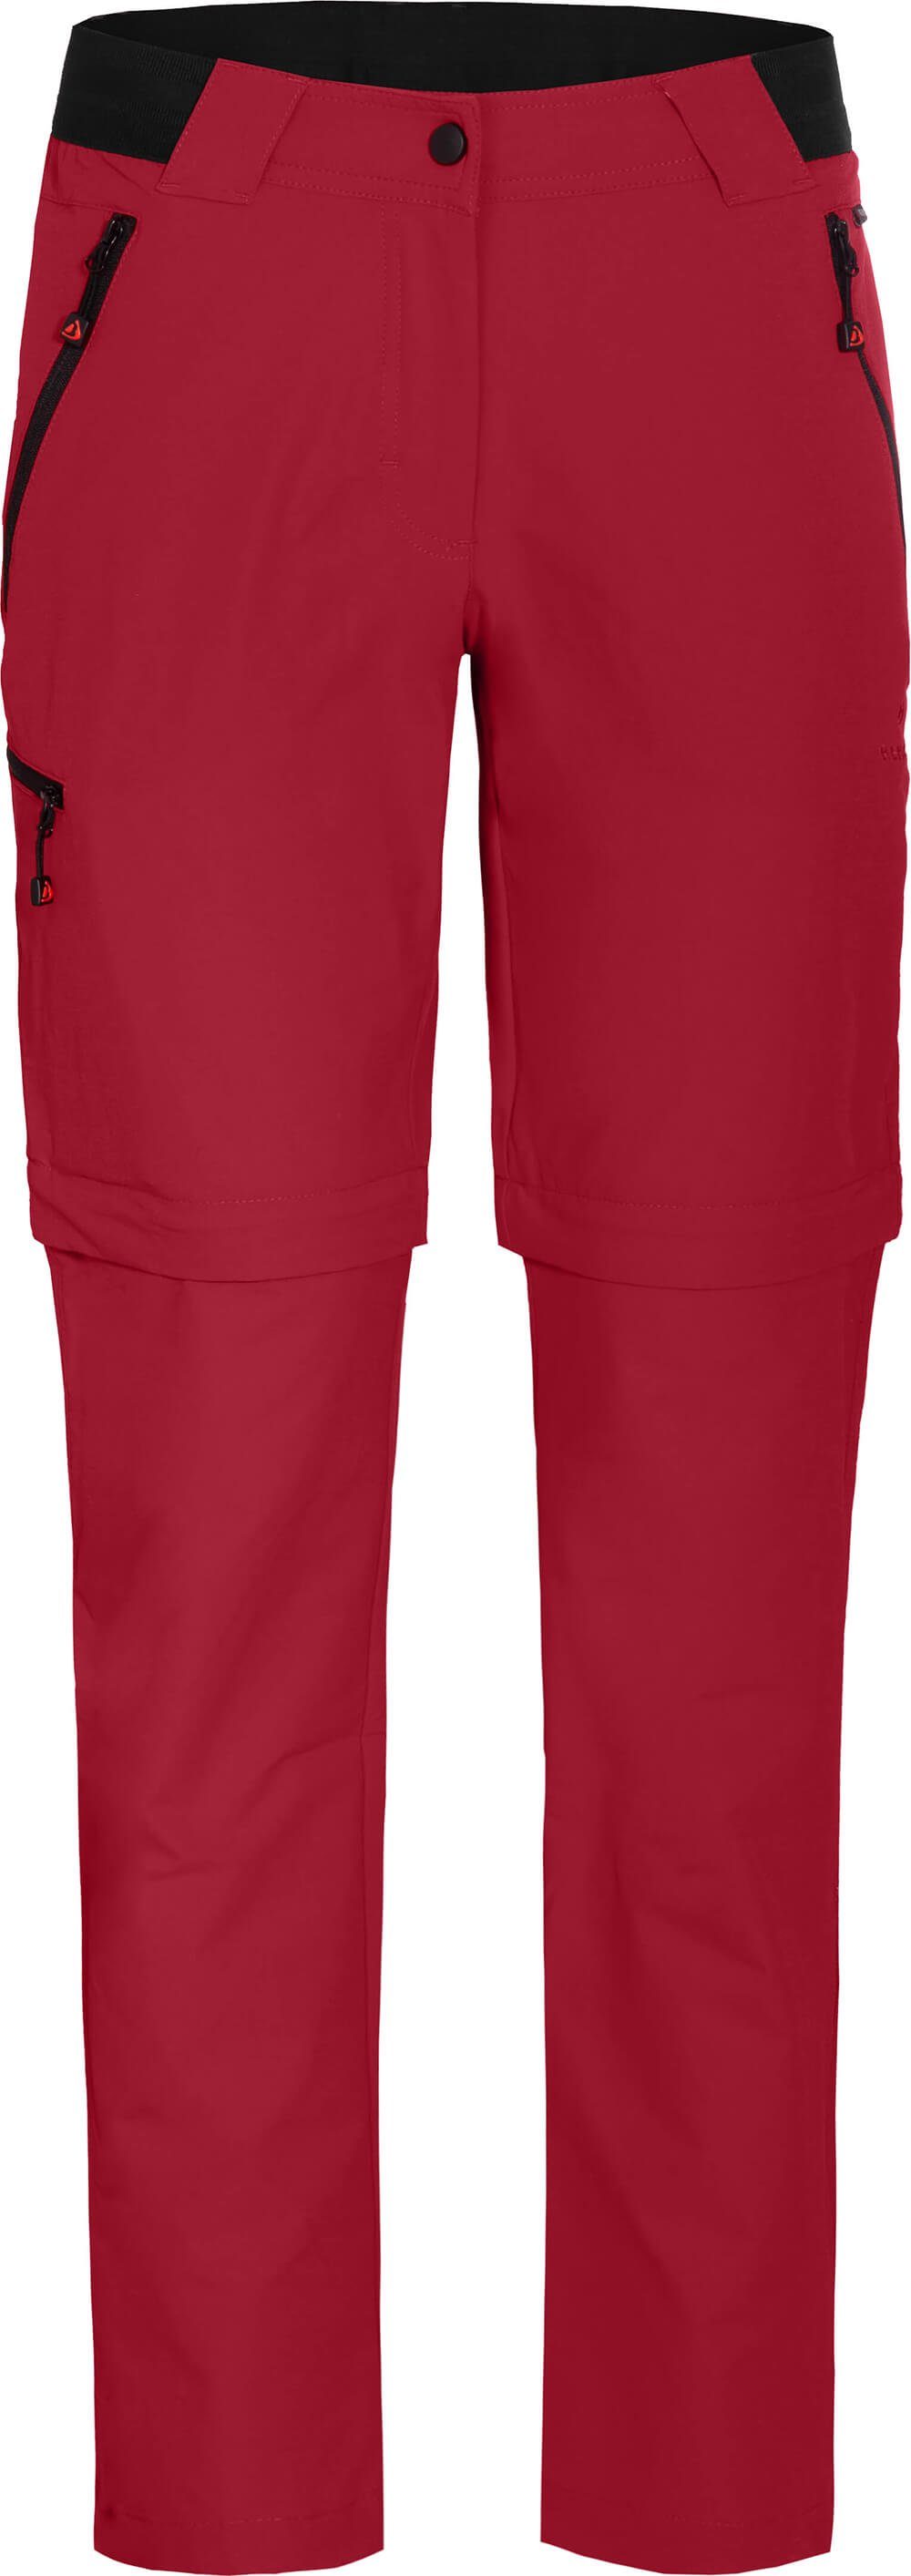 Wanderhose, Damen Zip-off-Hose Normalgrößen, leicht, strapazierfähig, Zipp-Off COMFORT VIDAA Bergson rot